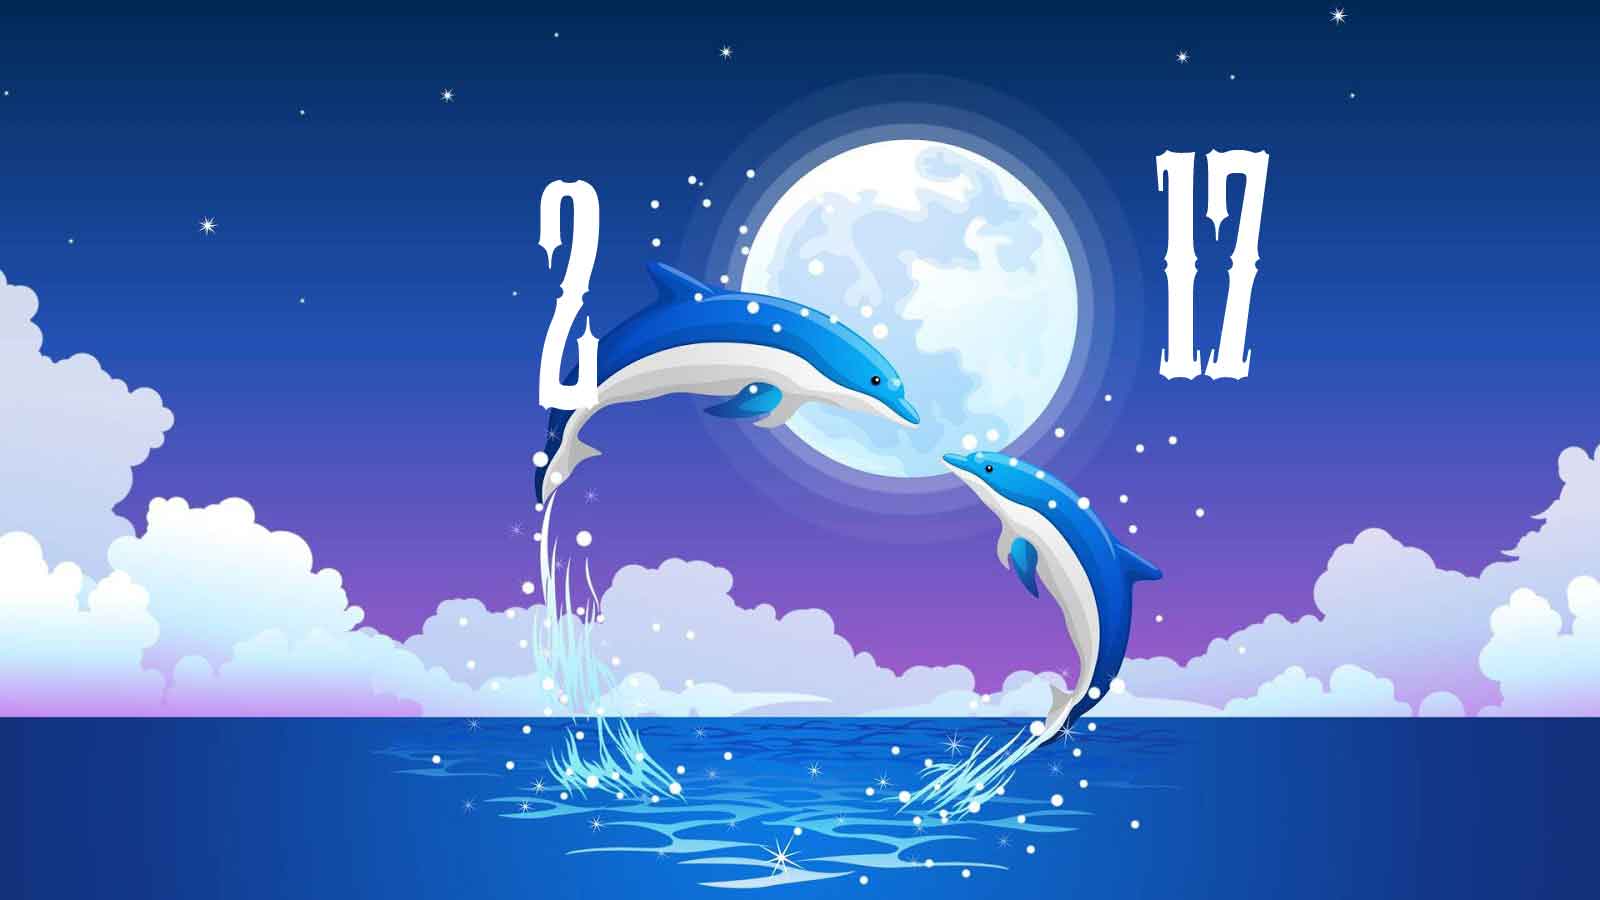 miglior sfondo del nuovo anno,acqua,cielo,delfino,disegno grafico,illustrazione